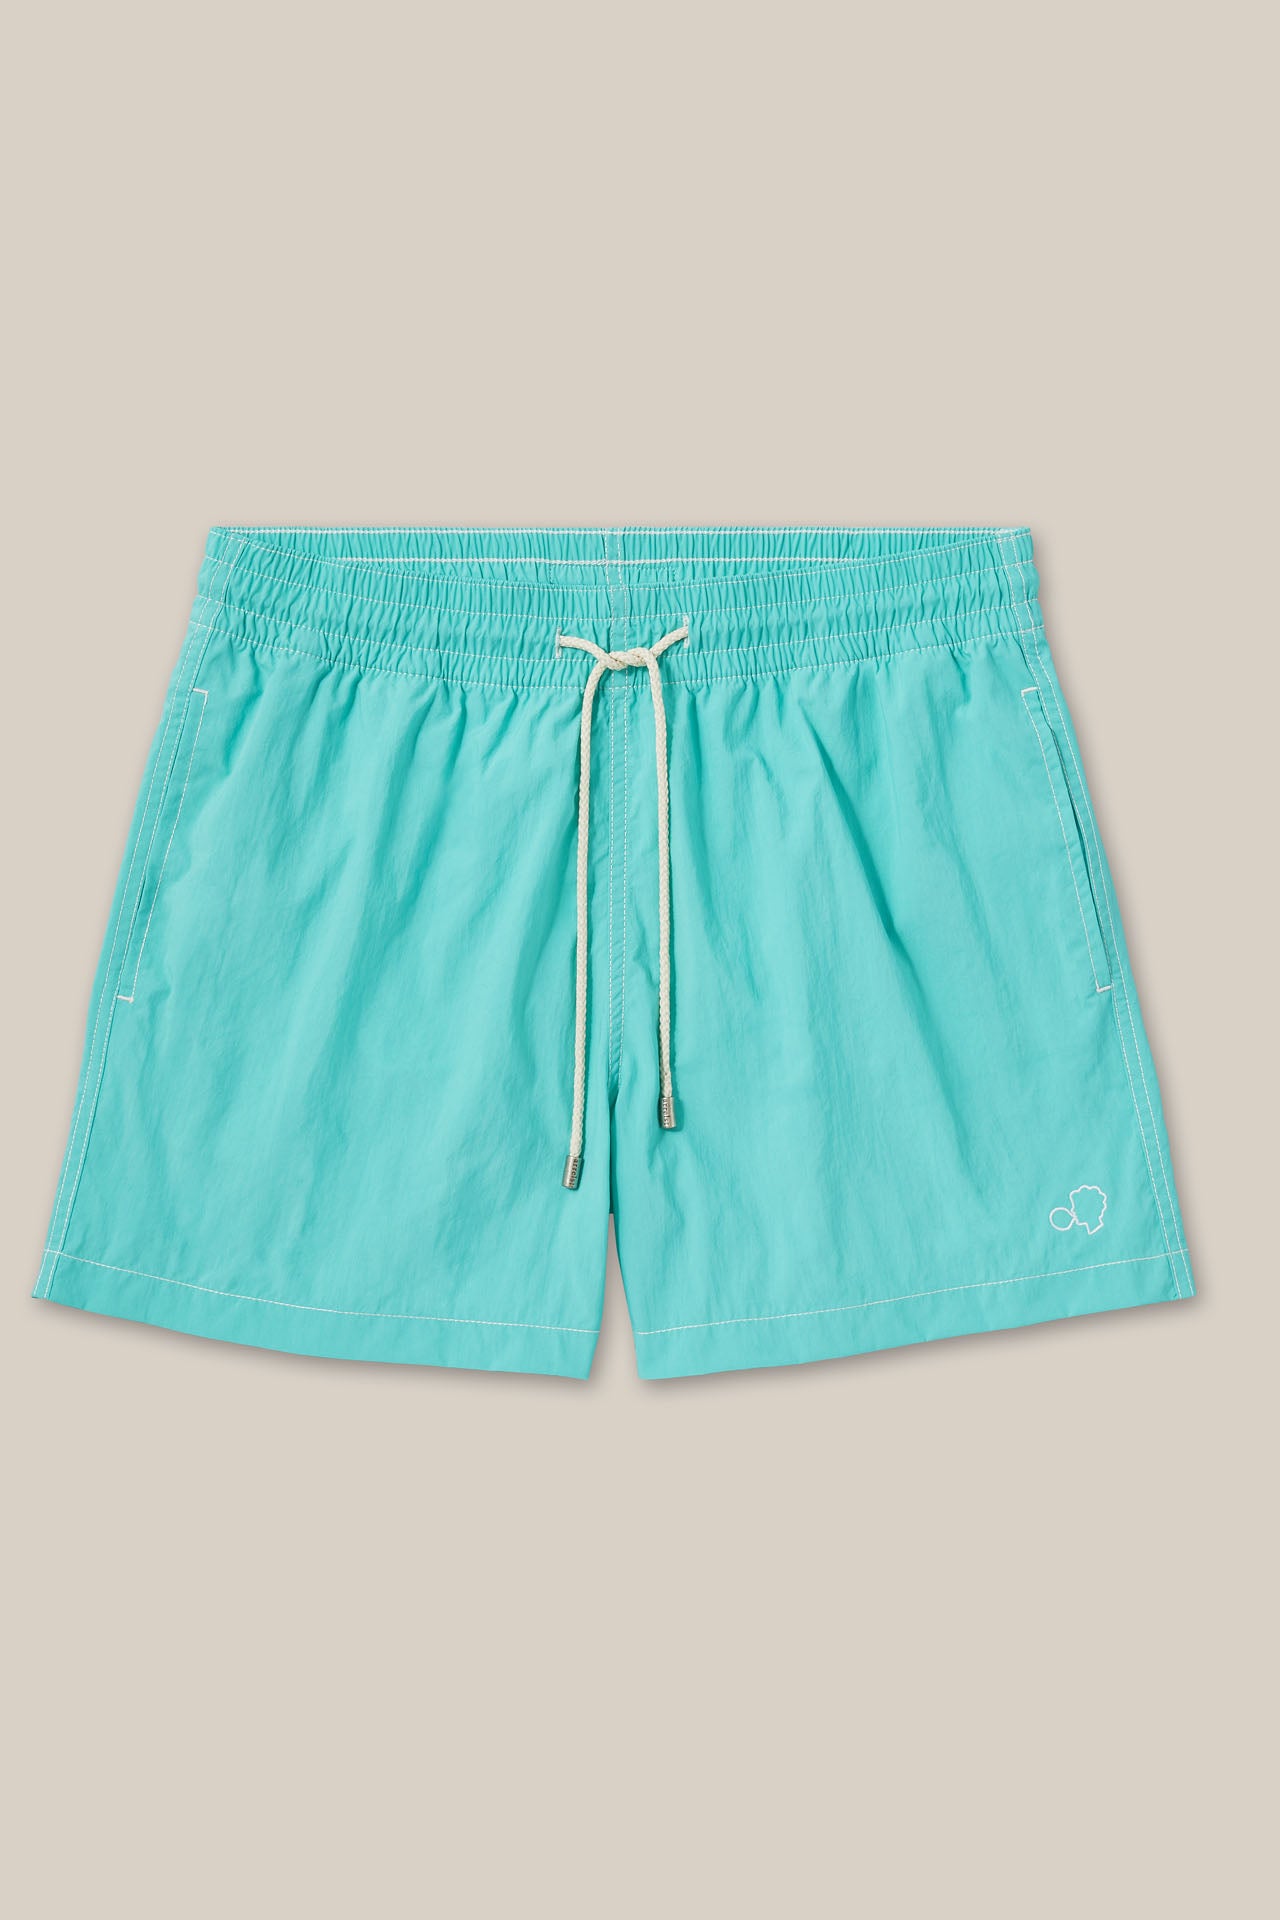 Swim Shorts Turquoise